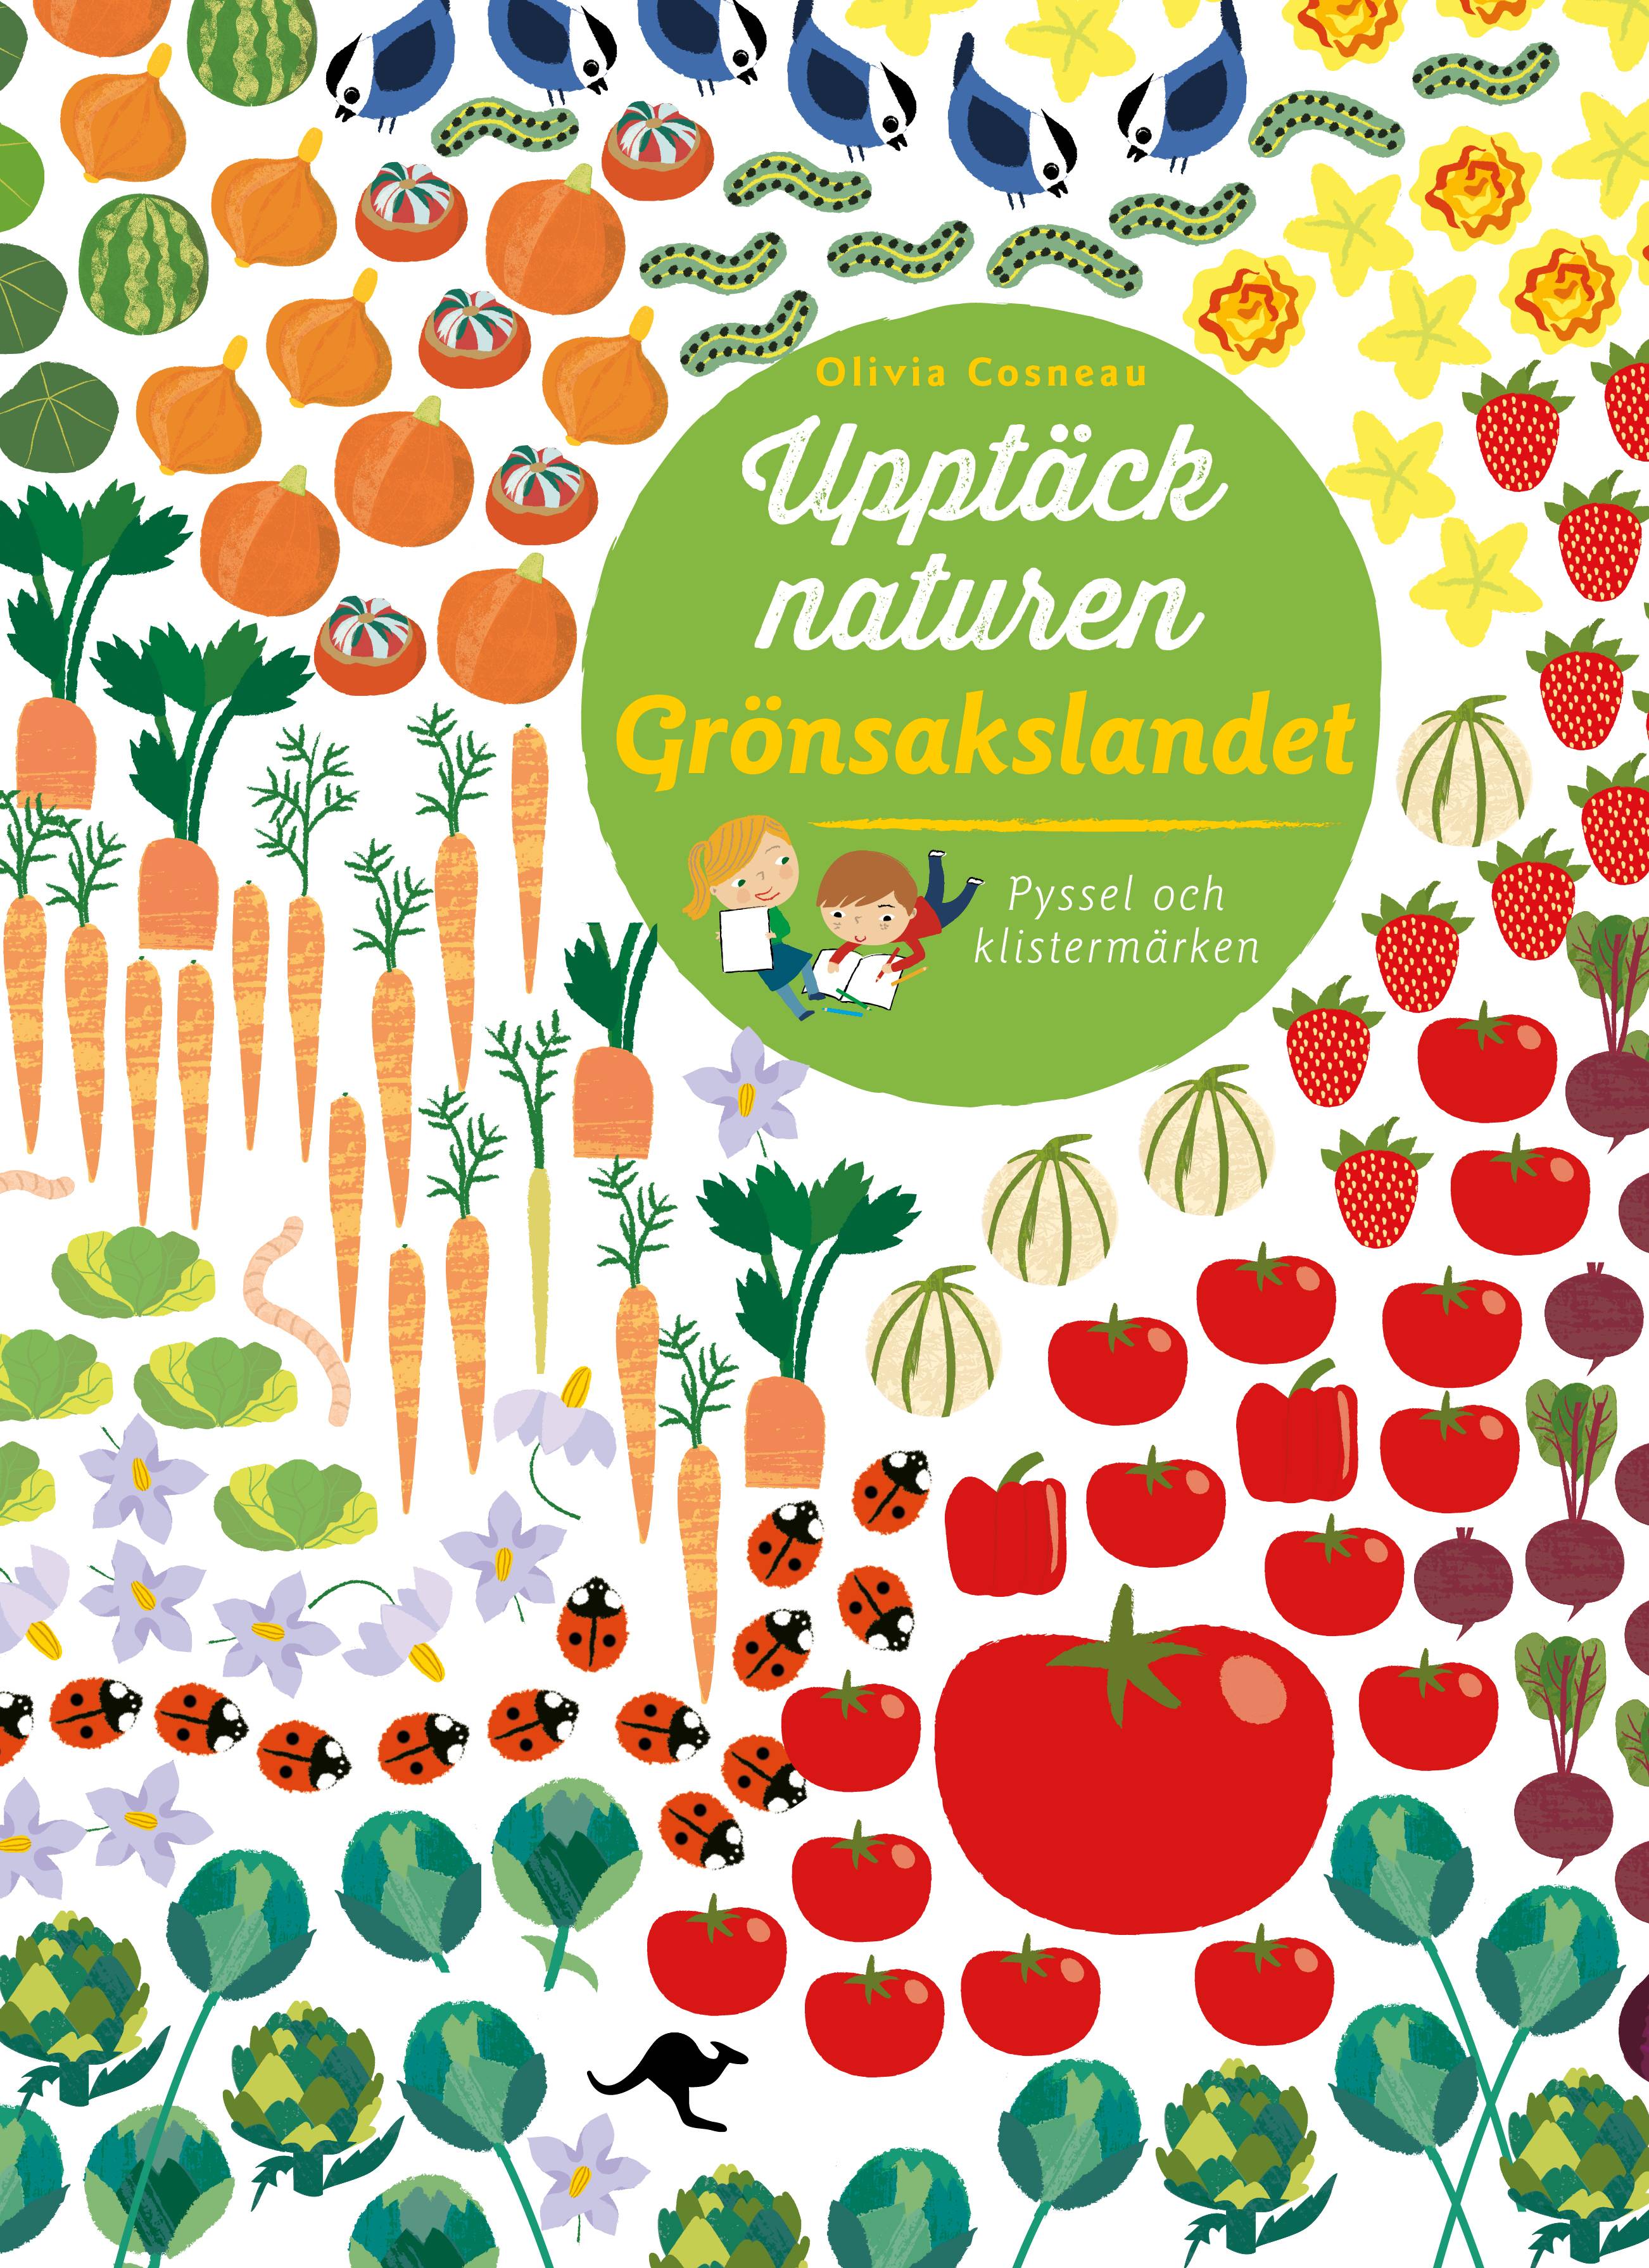 Upptäck naturen : Grönsakslandet - Pyssel och klistermärken